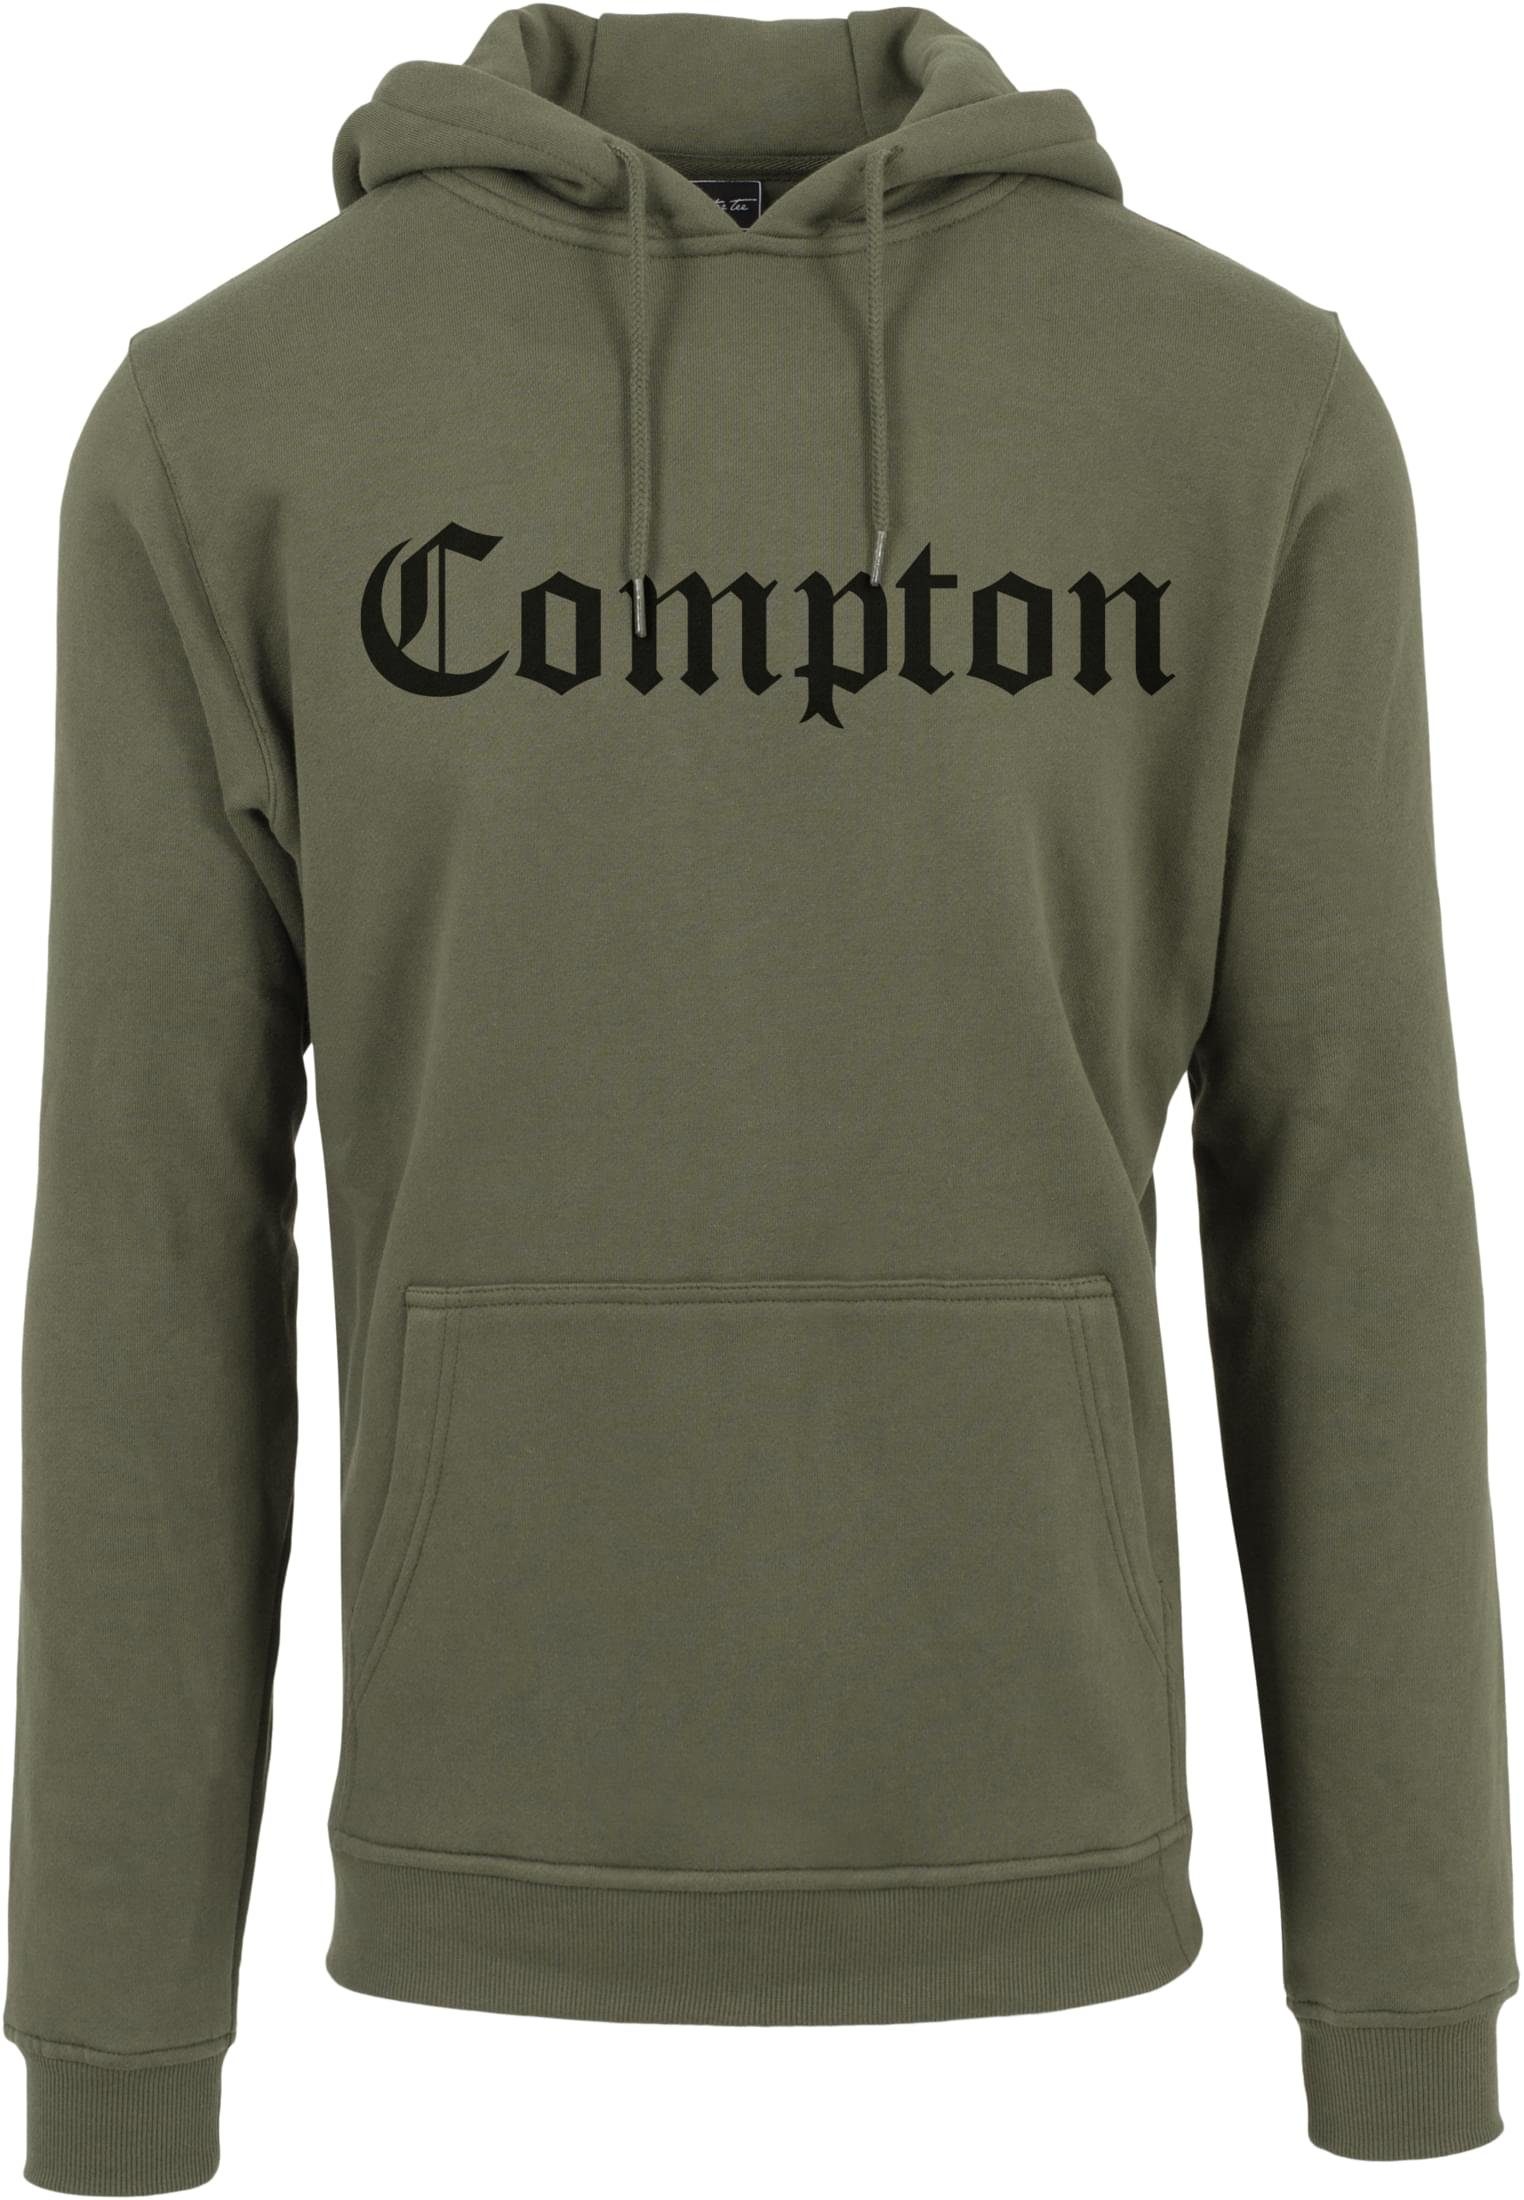 Compton (1-tlg) olive Herren Hoody Sweater MisterTee